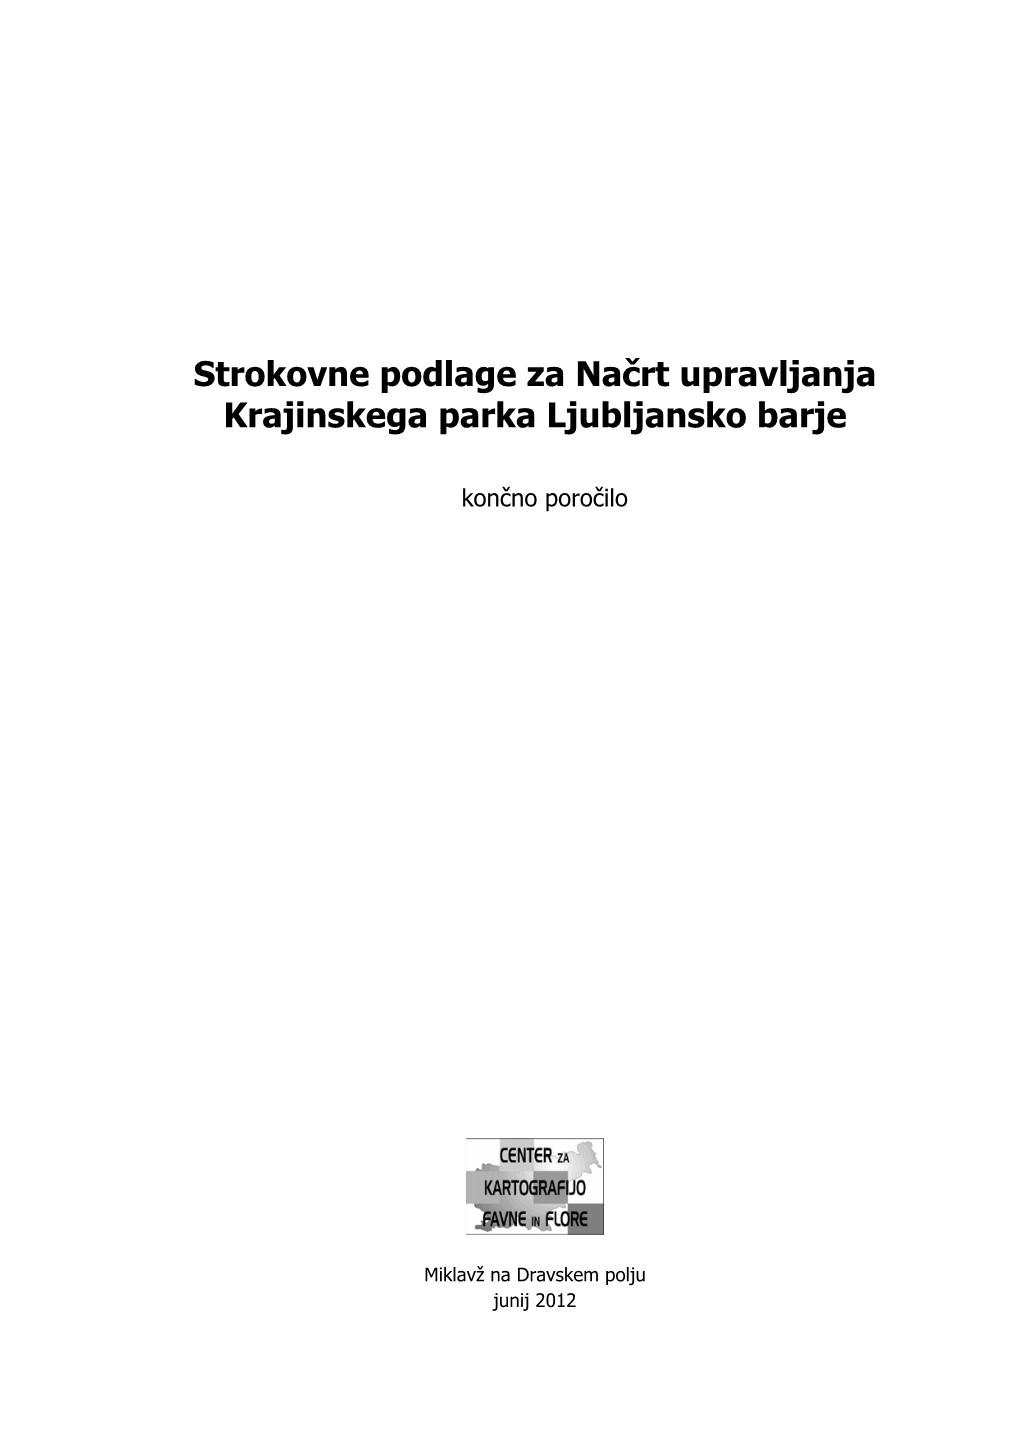 Strokovne Podlage Za Načrt Upravljanja Krajinskega Parka Ljubljansko Barje, CKFF, 2012